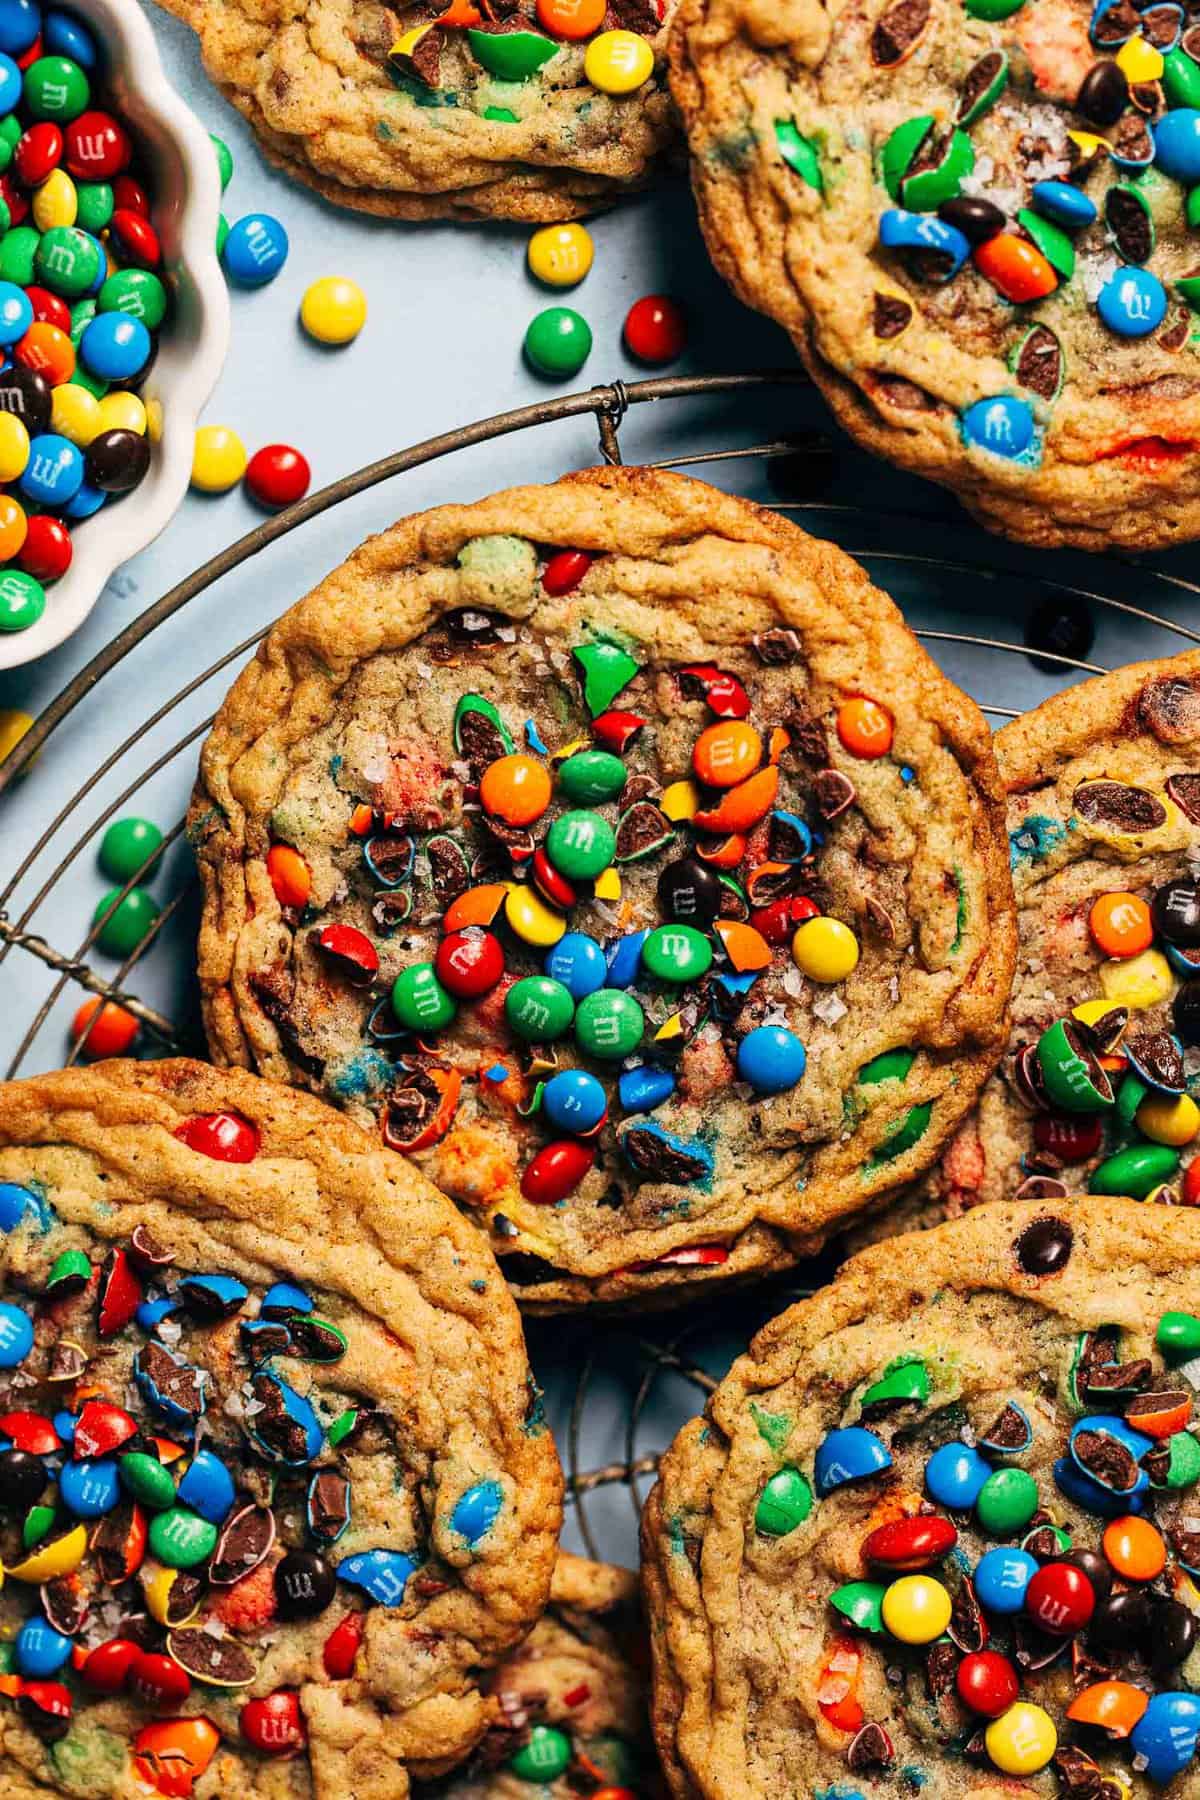 BEST M&M Cookies - Butternut Bakery